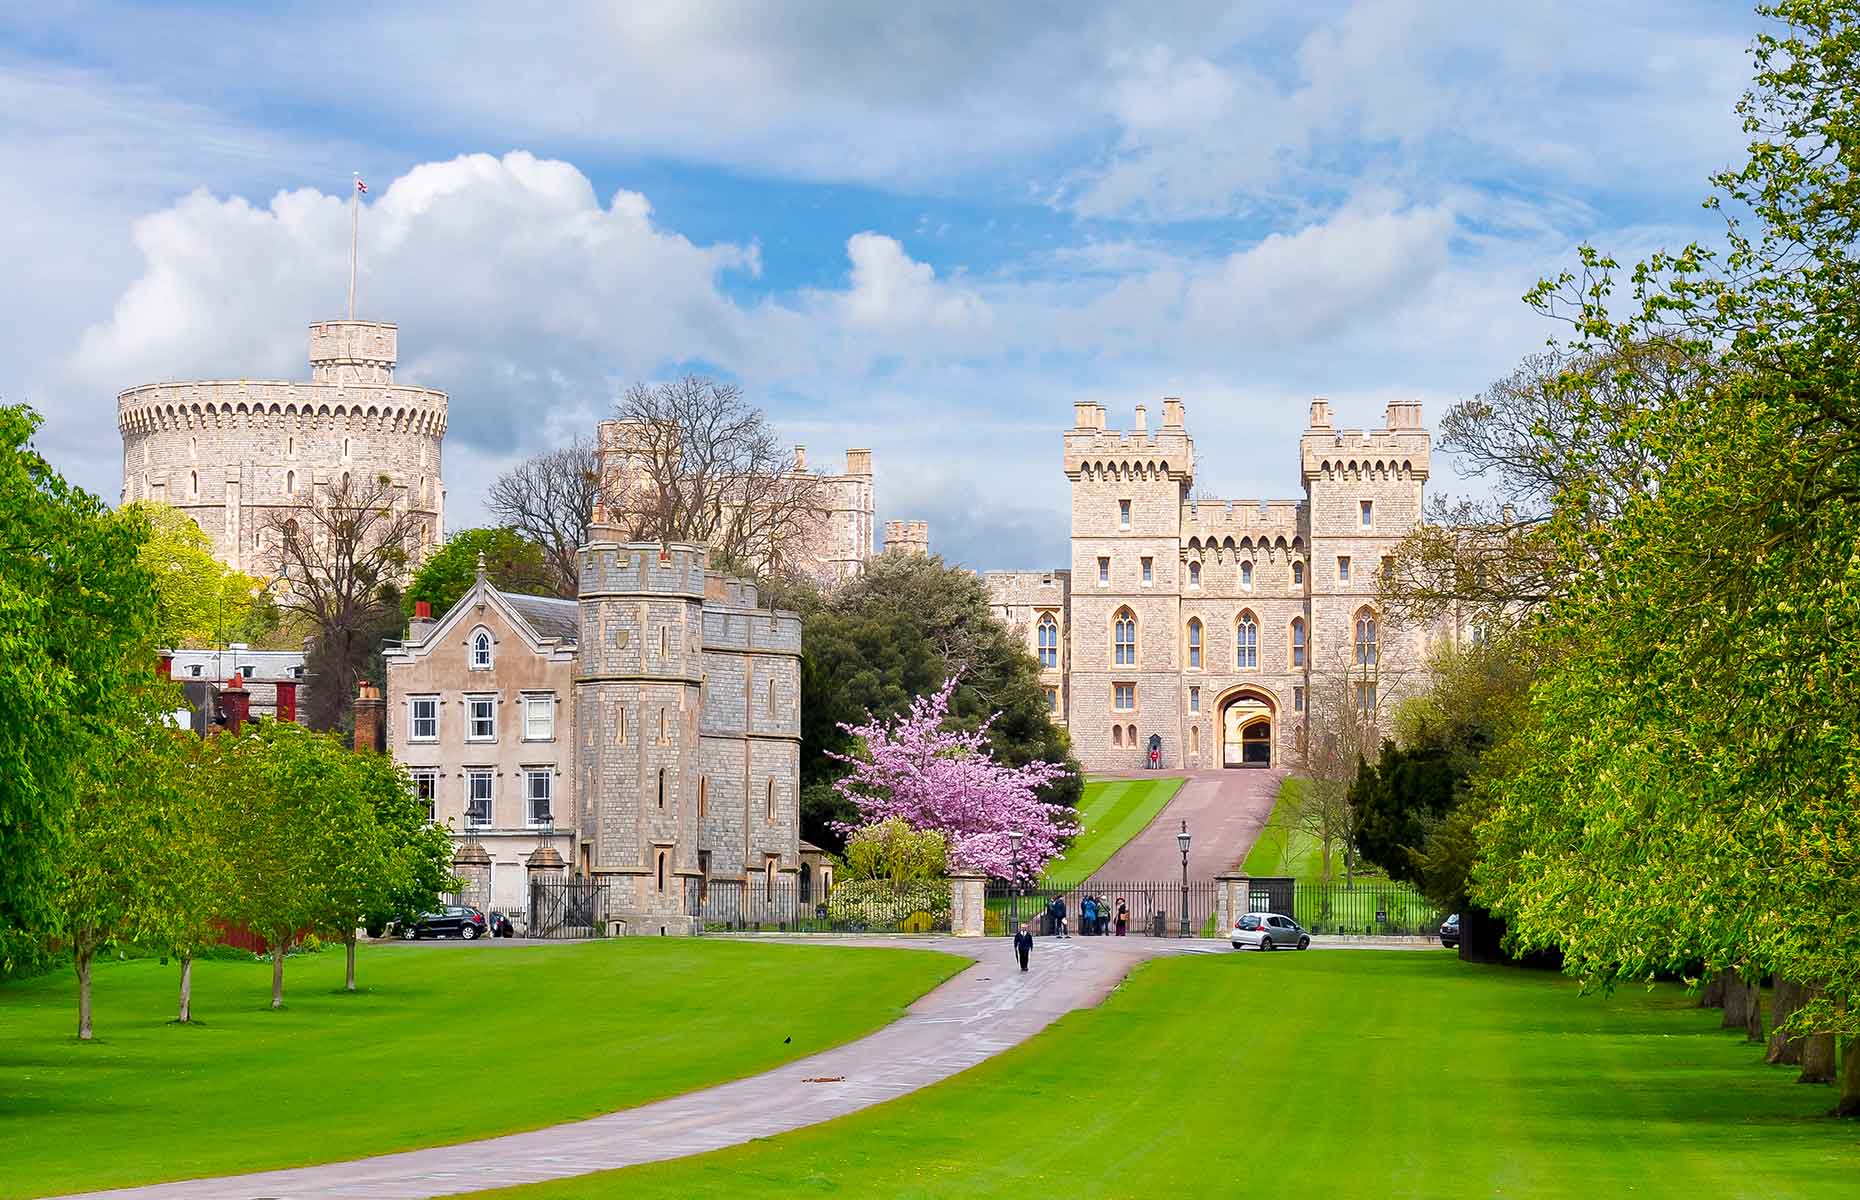 Windsor Castle (Image: Mistervlad/Shutterstock)